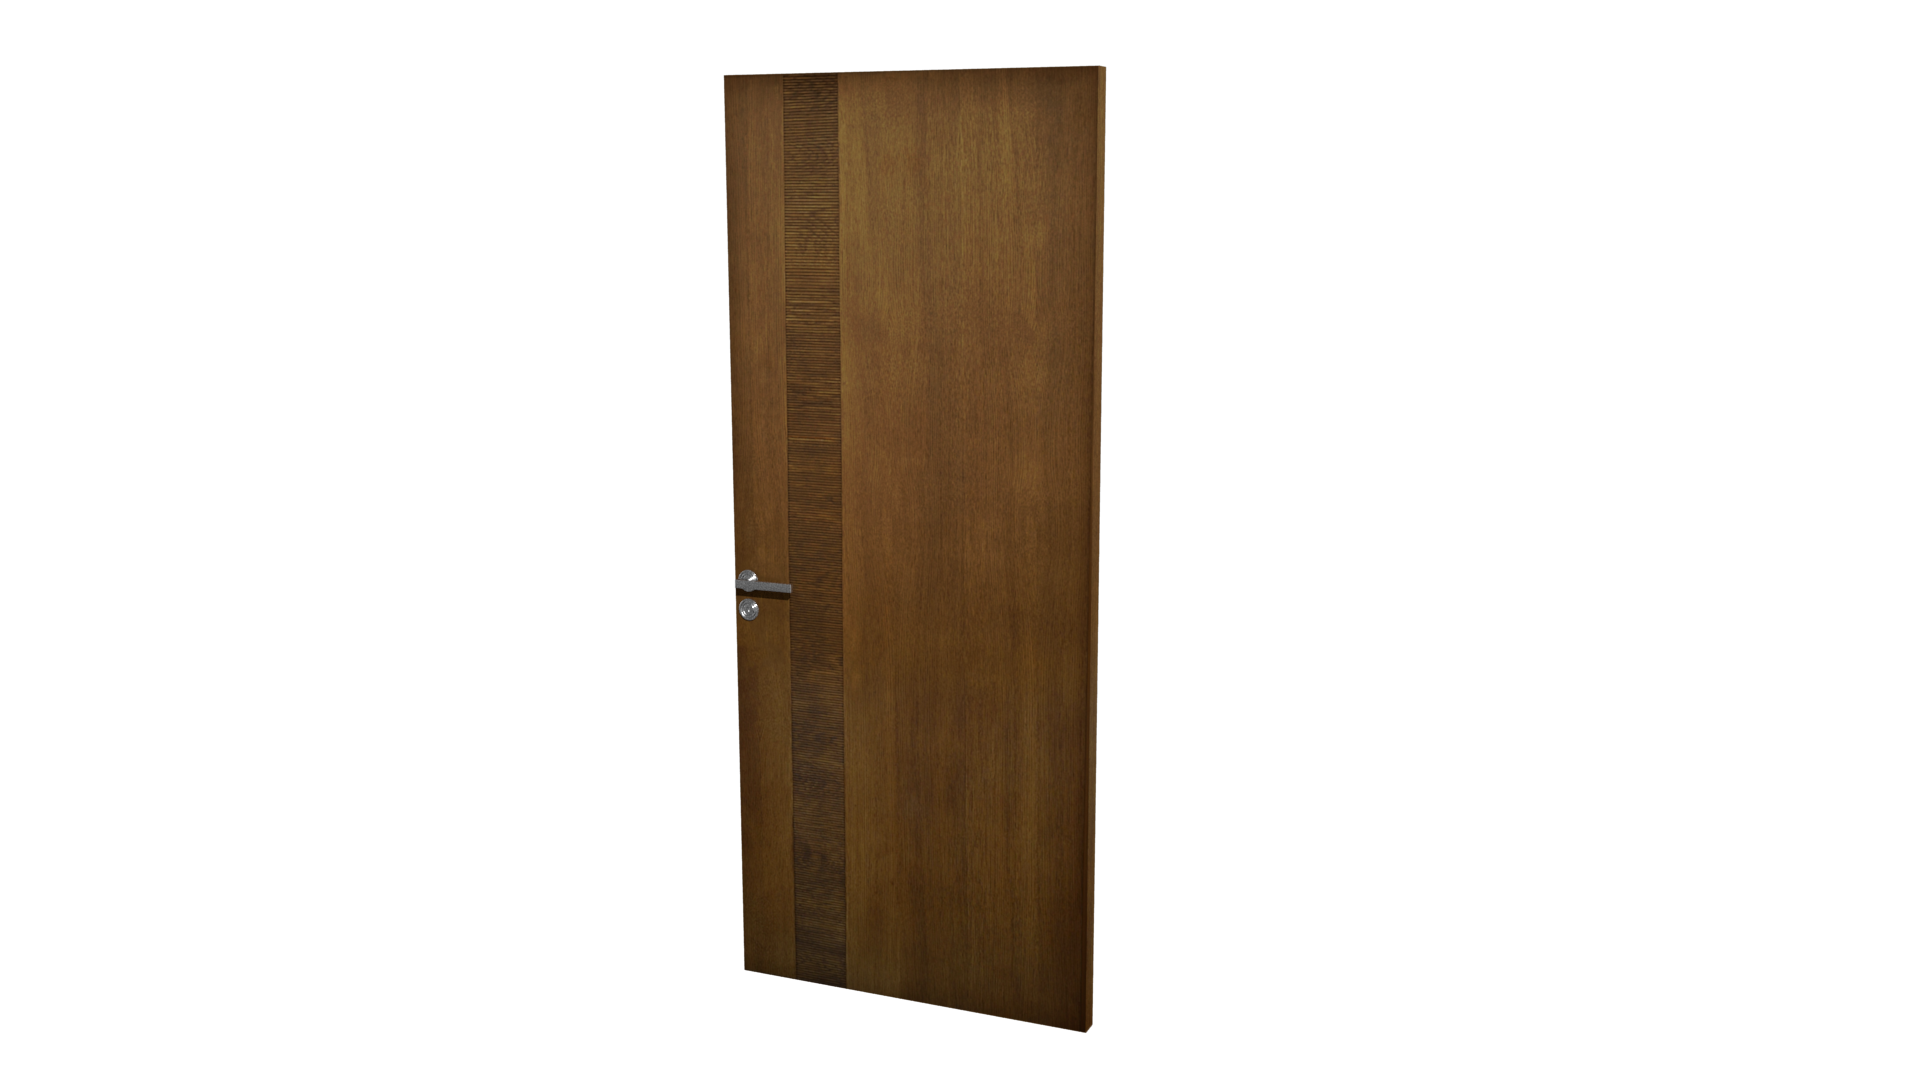 3D Model wooden door View at My world of Doors